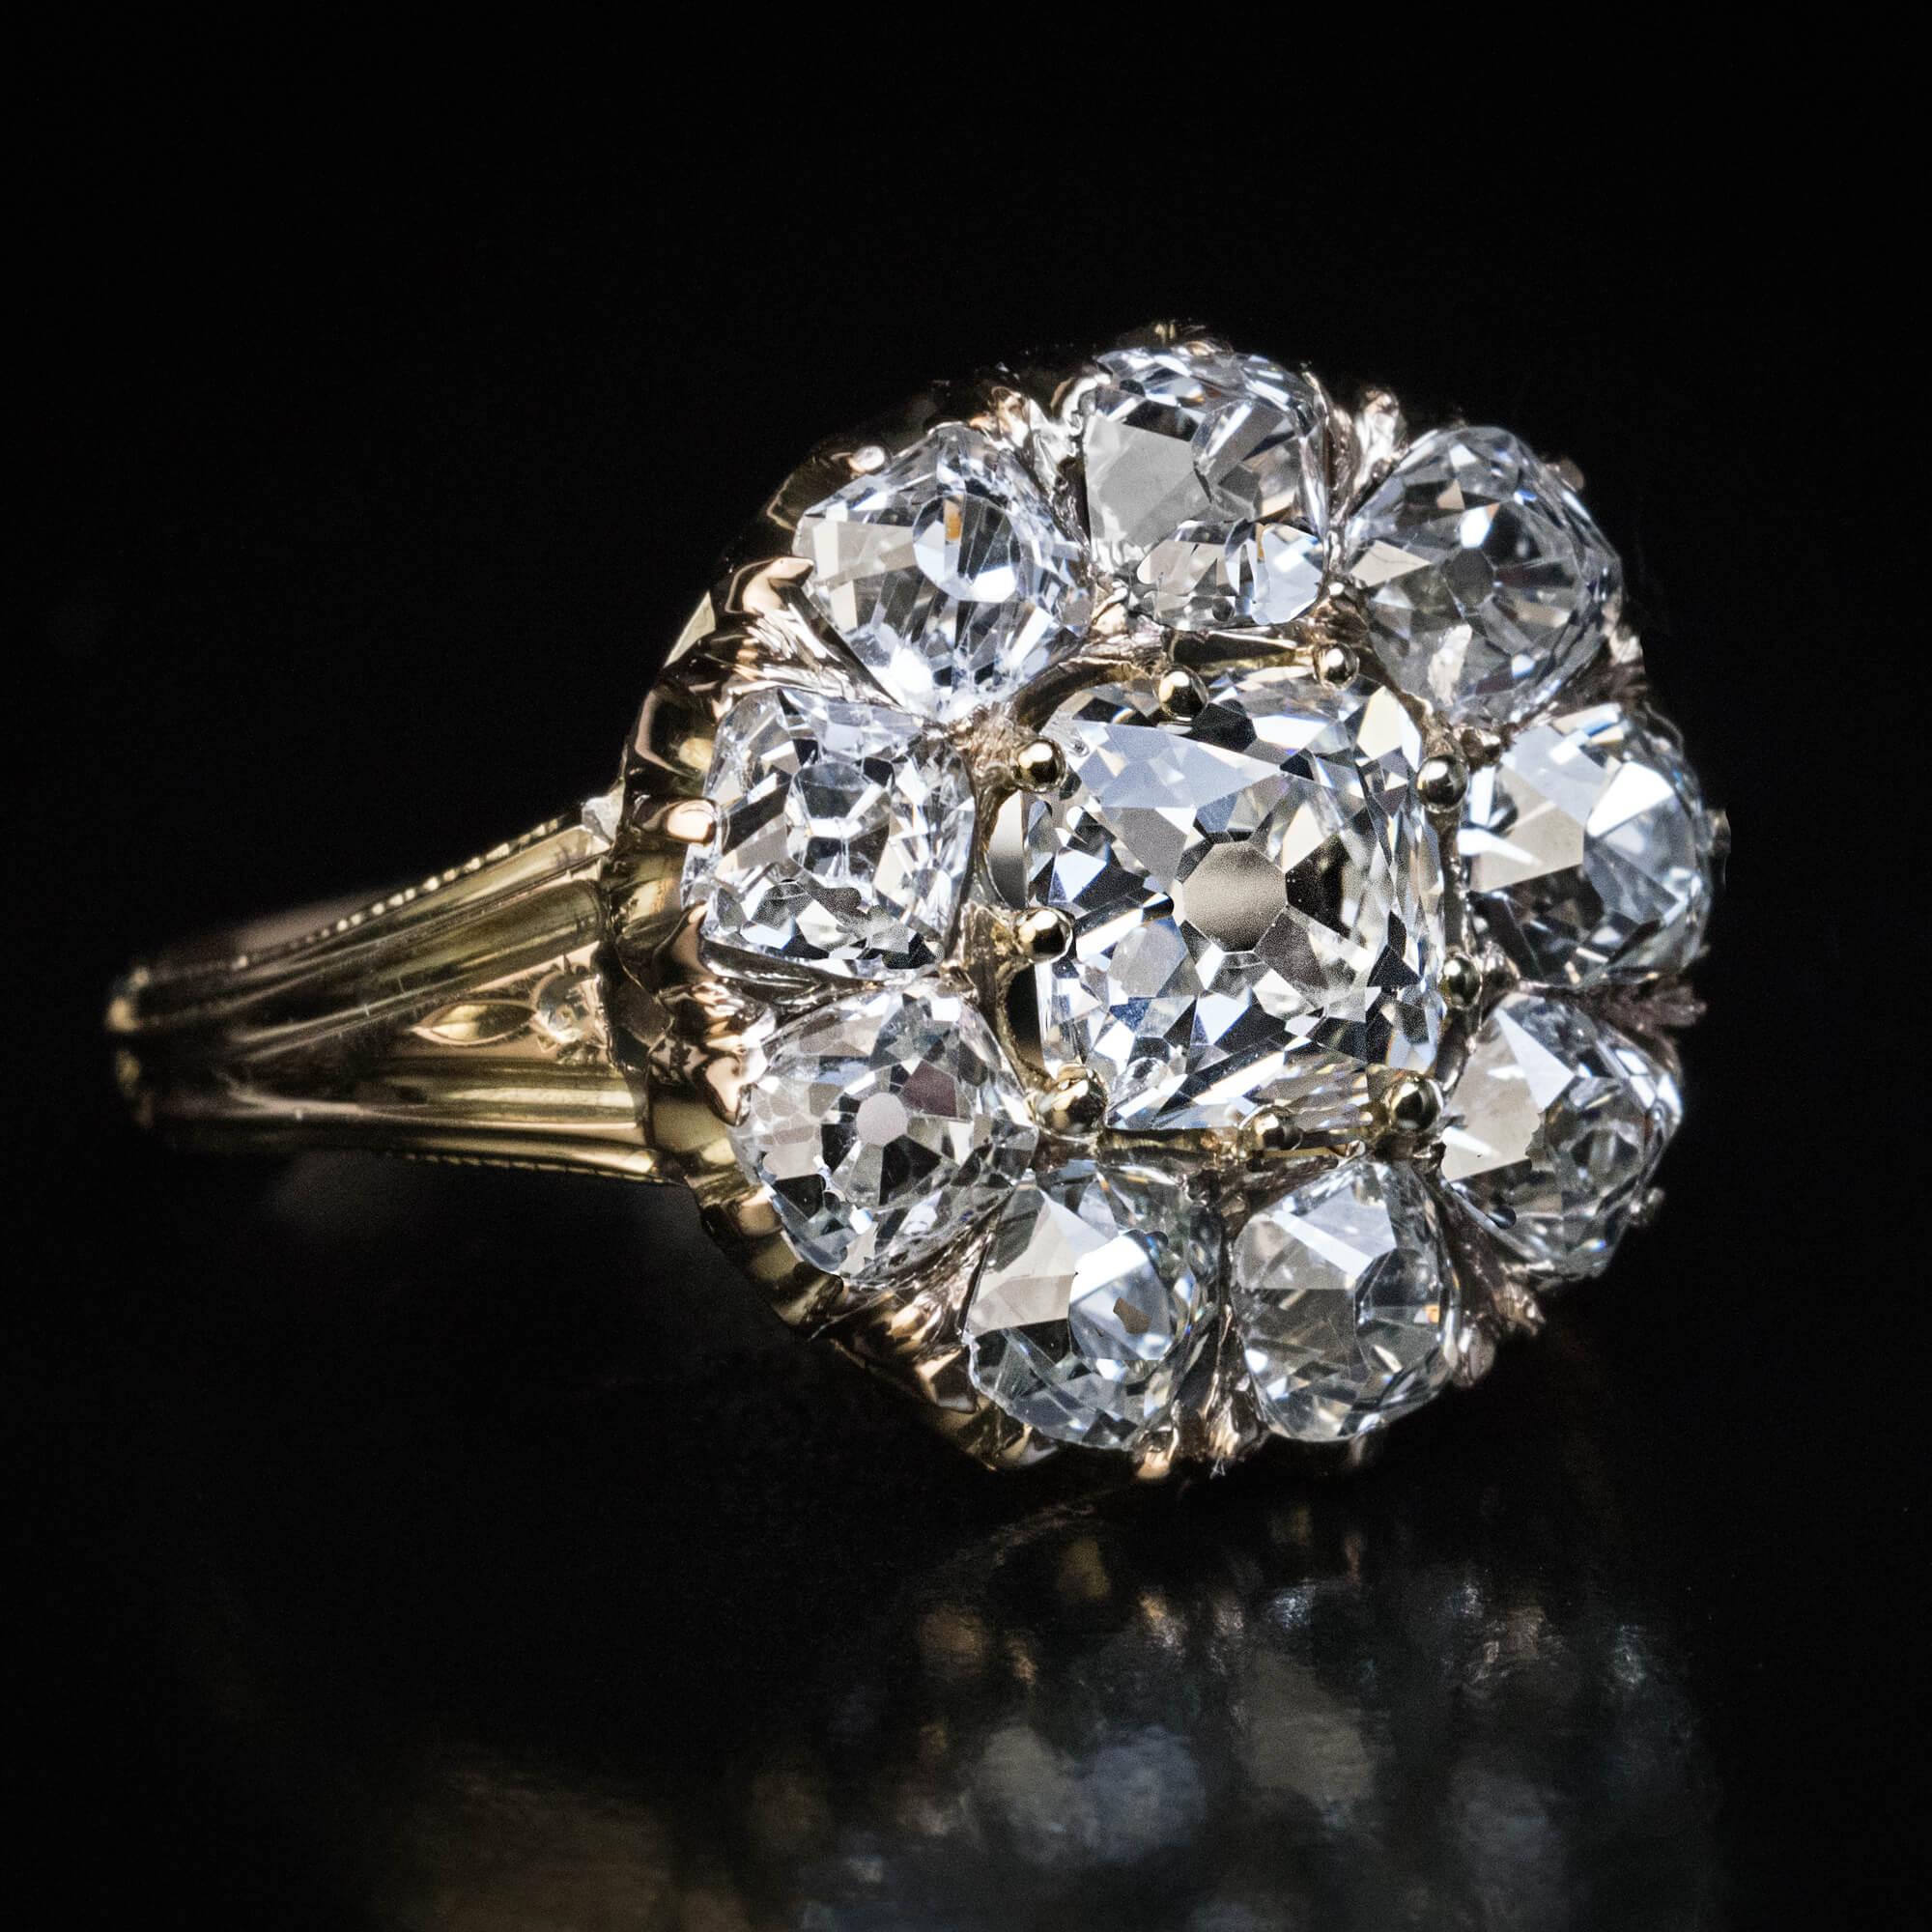 CIRCA 1880  Dieser klassische 14-Karat-Gold-Cluster-Ring aus der viktorianischen Ära zeichnet sich durch klobige und sehr saubere alte Diamanten im Kissenschliff aus.  Das Gewicht des Hauptdiamanten beträgt 1,04 Karat (Farbe I, Reinheit VS1).  Der